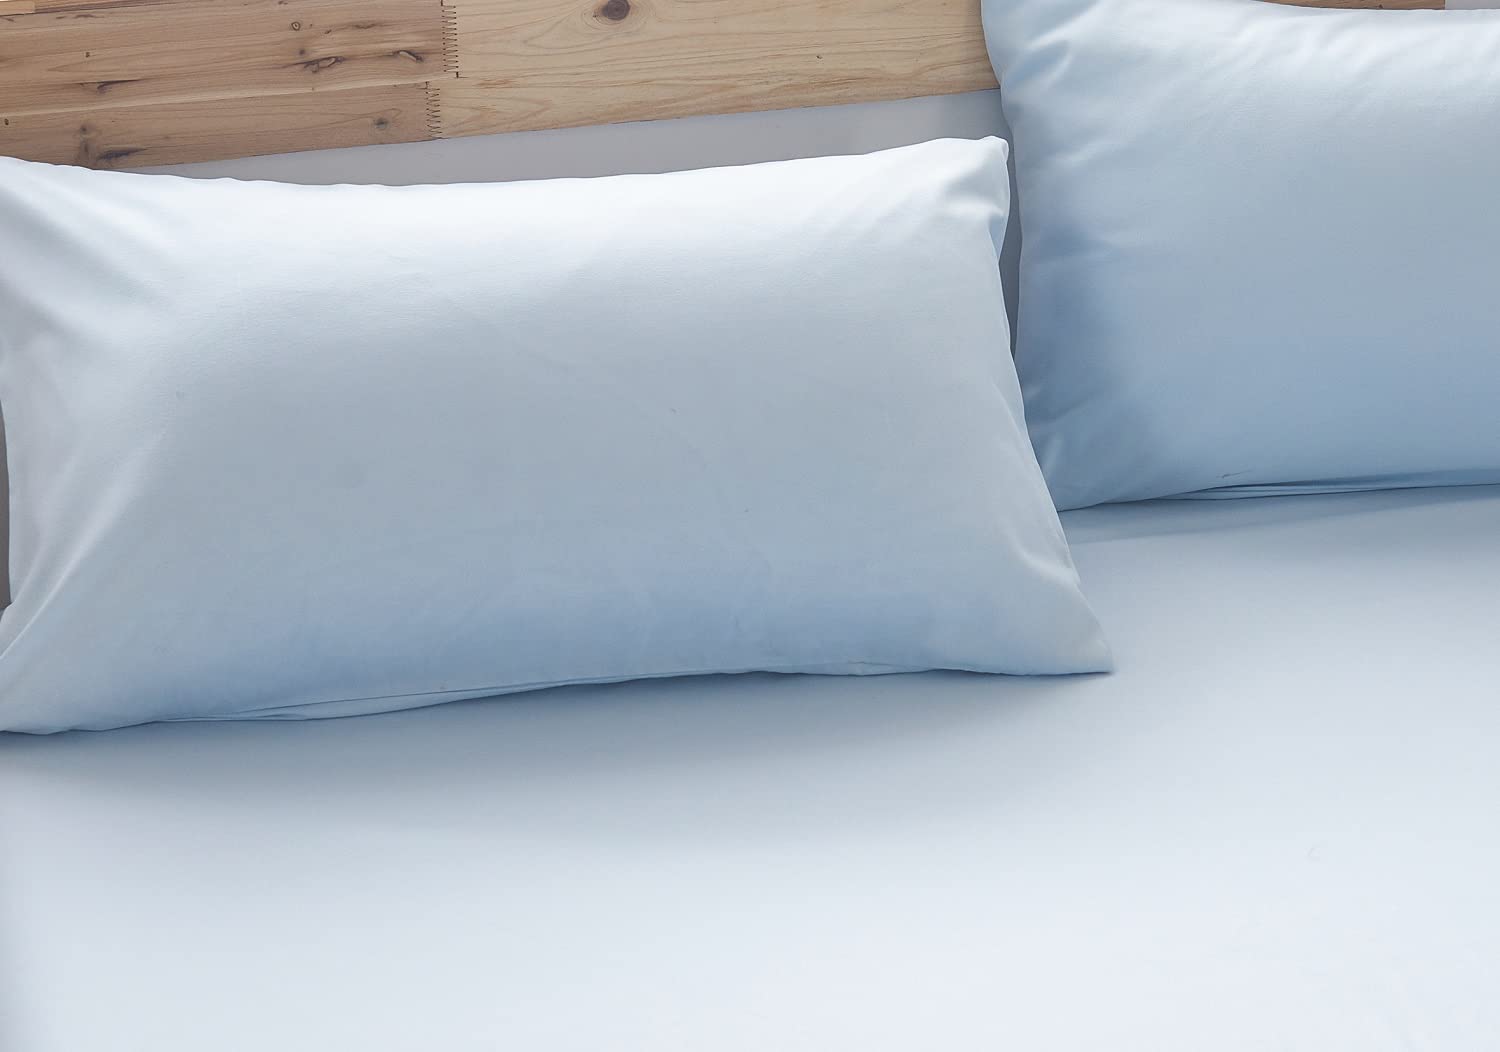 YOYOSTAR枕カバー 2枚セット 43x63cm ピローケース 封筒式 合わせ式 綿混 無地 防ダニ 防シワ 毛玉なし 水色